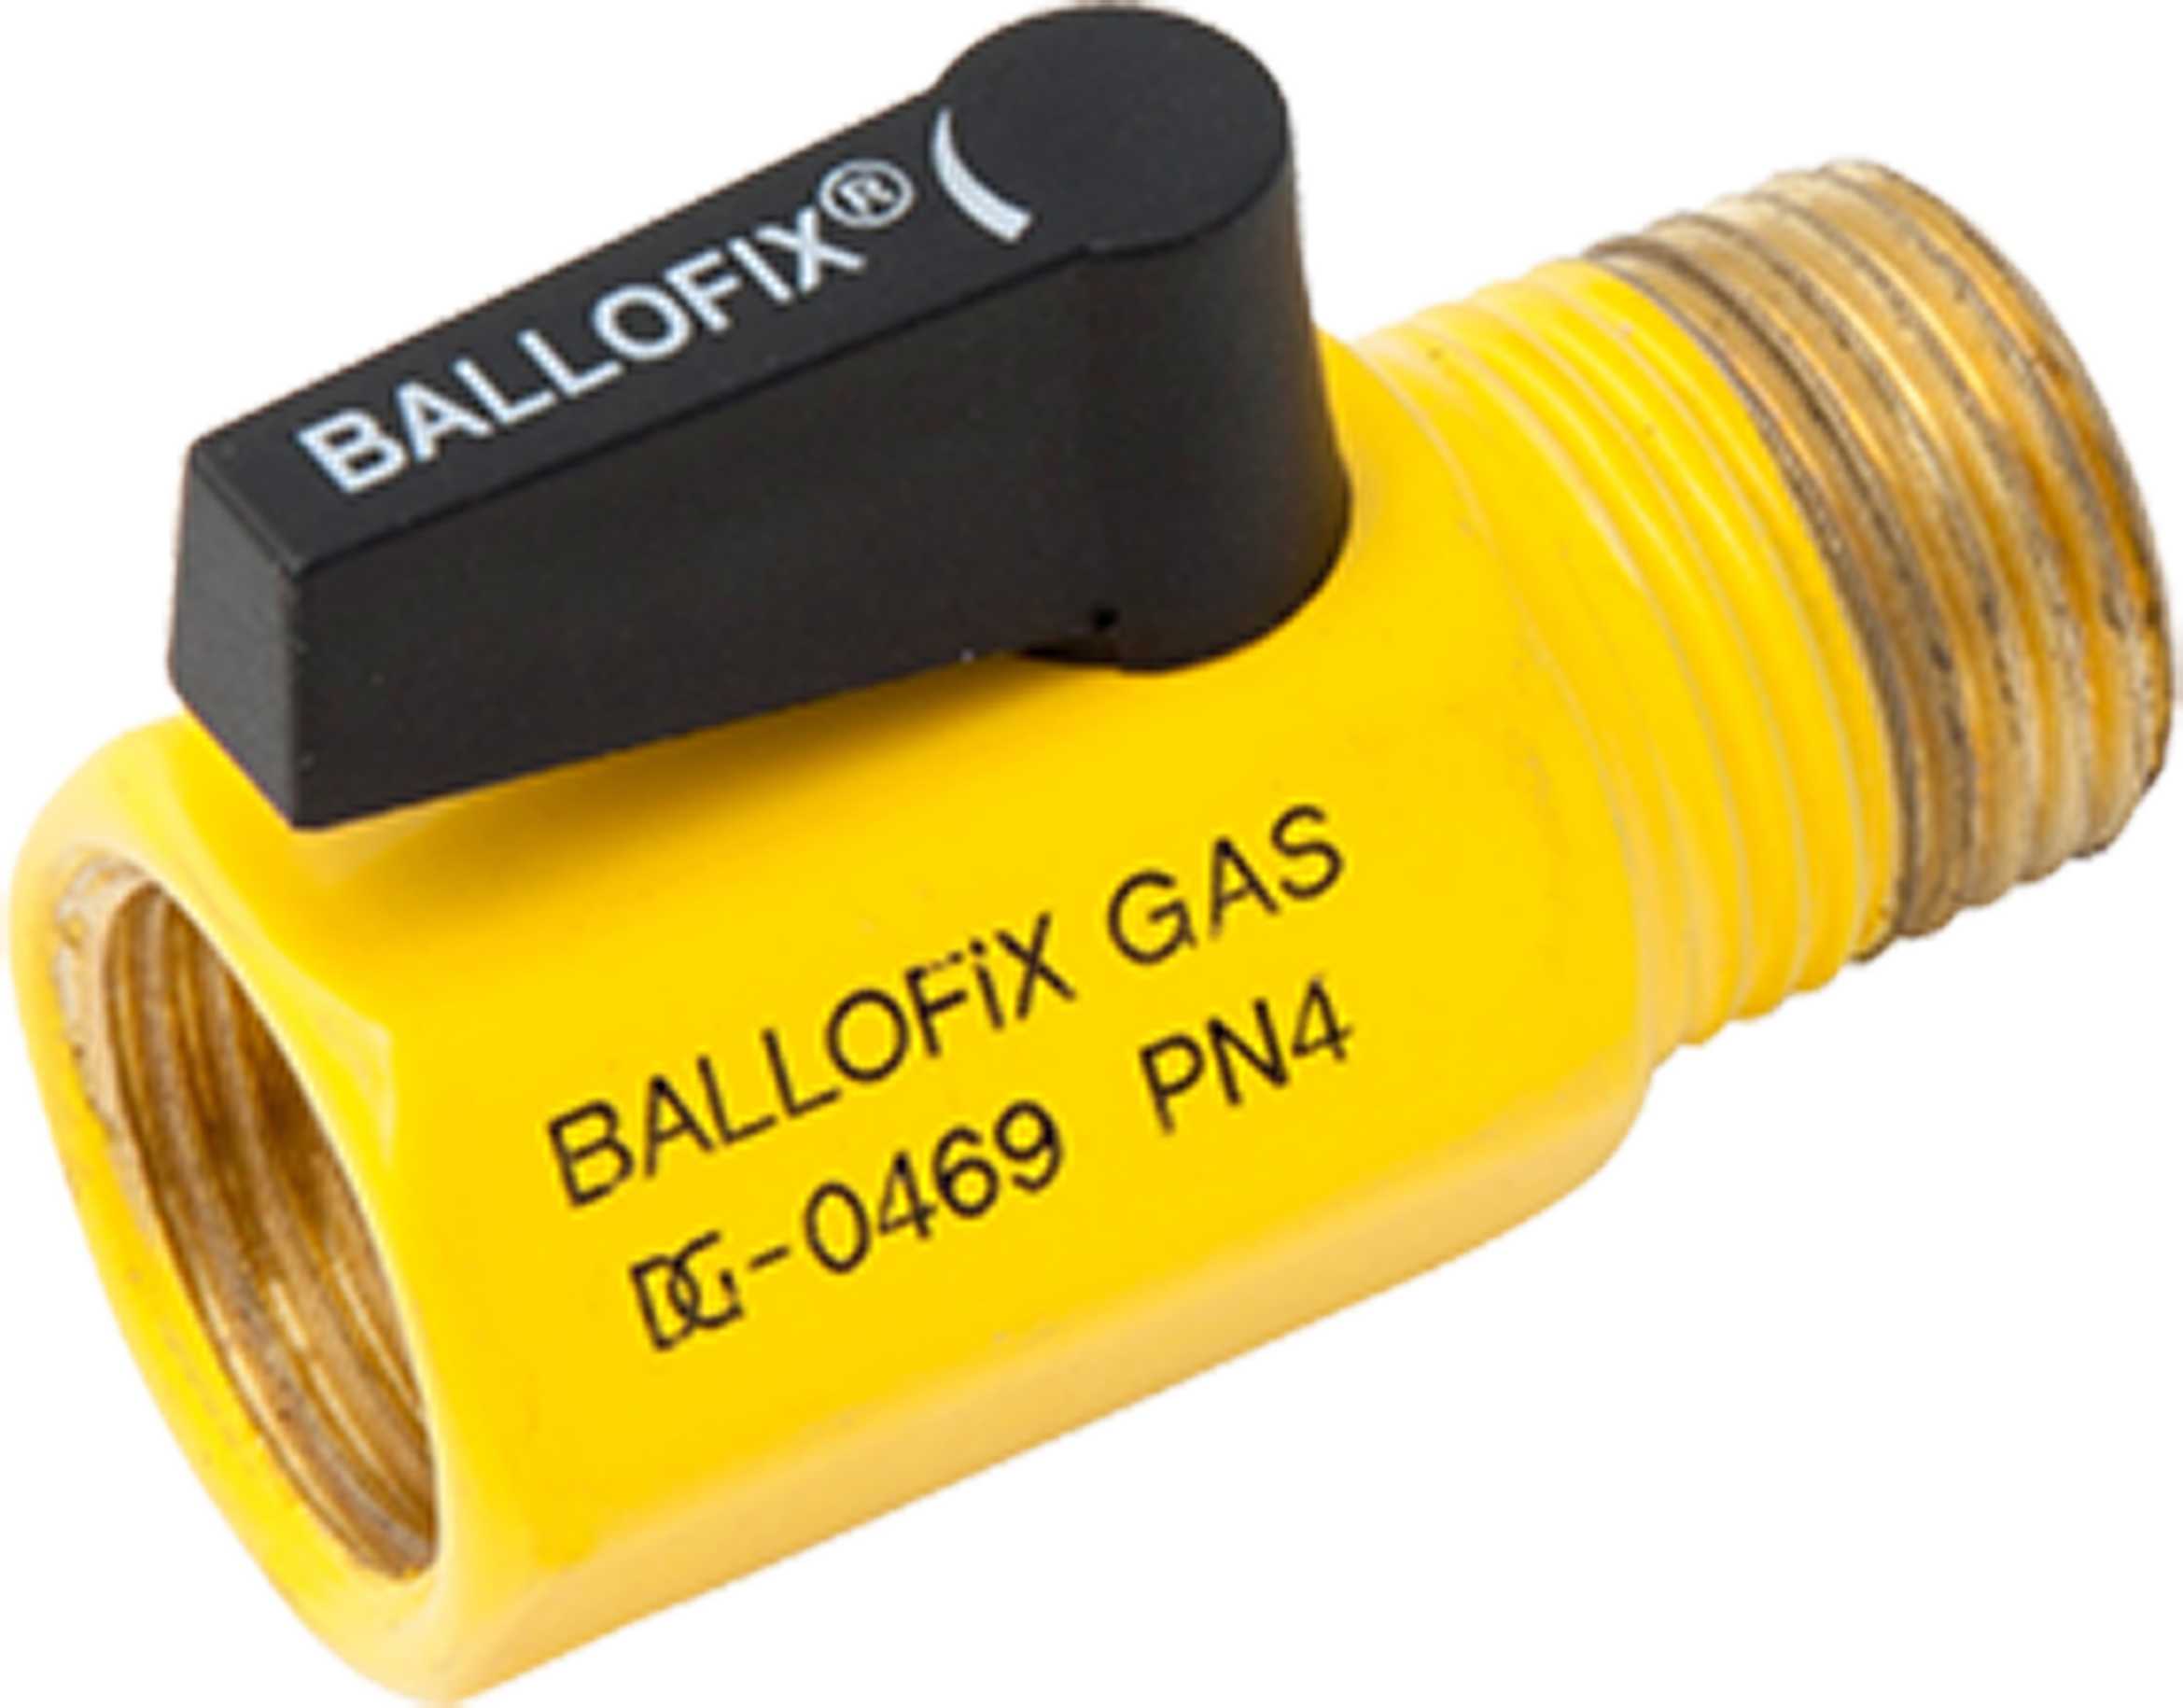 Preview image for Broen Ballofix Gas minikogelkraan (binnendraad x buitendraad)